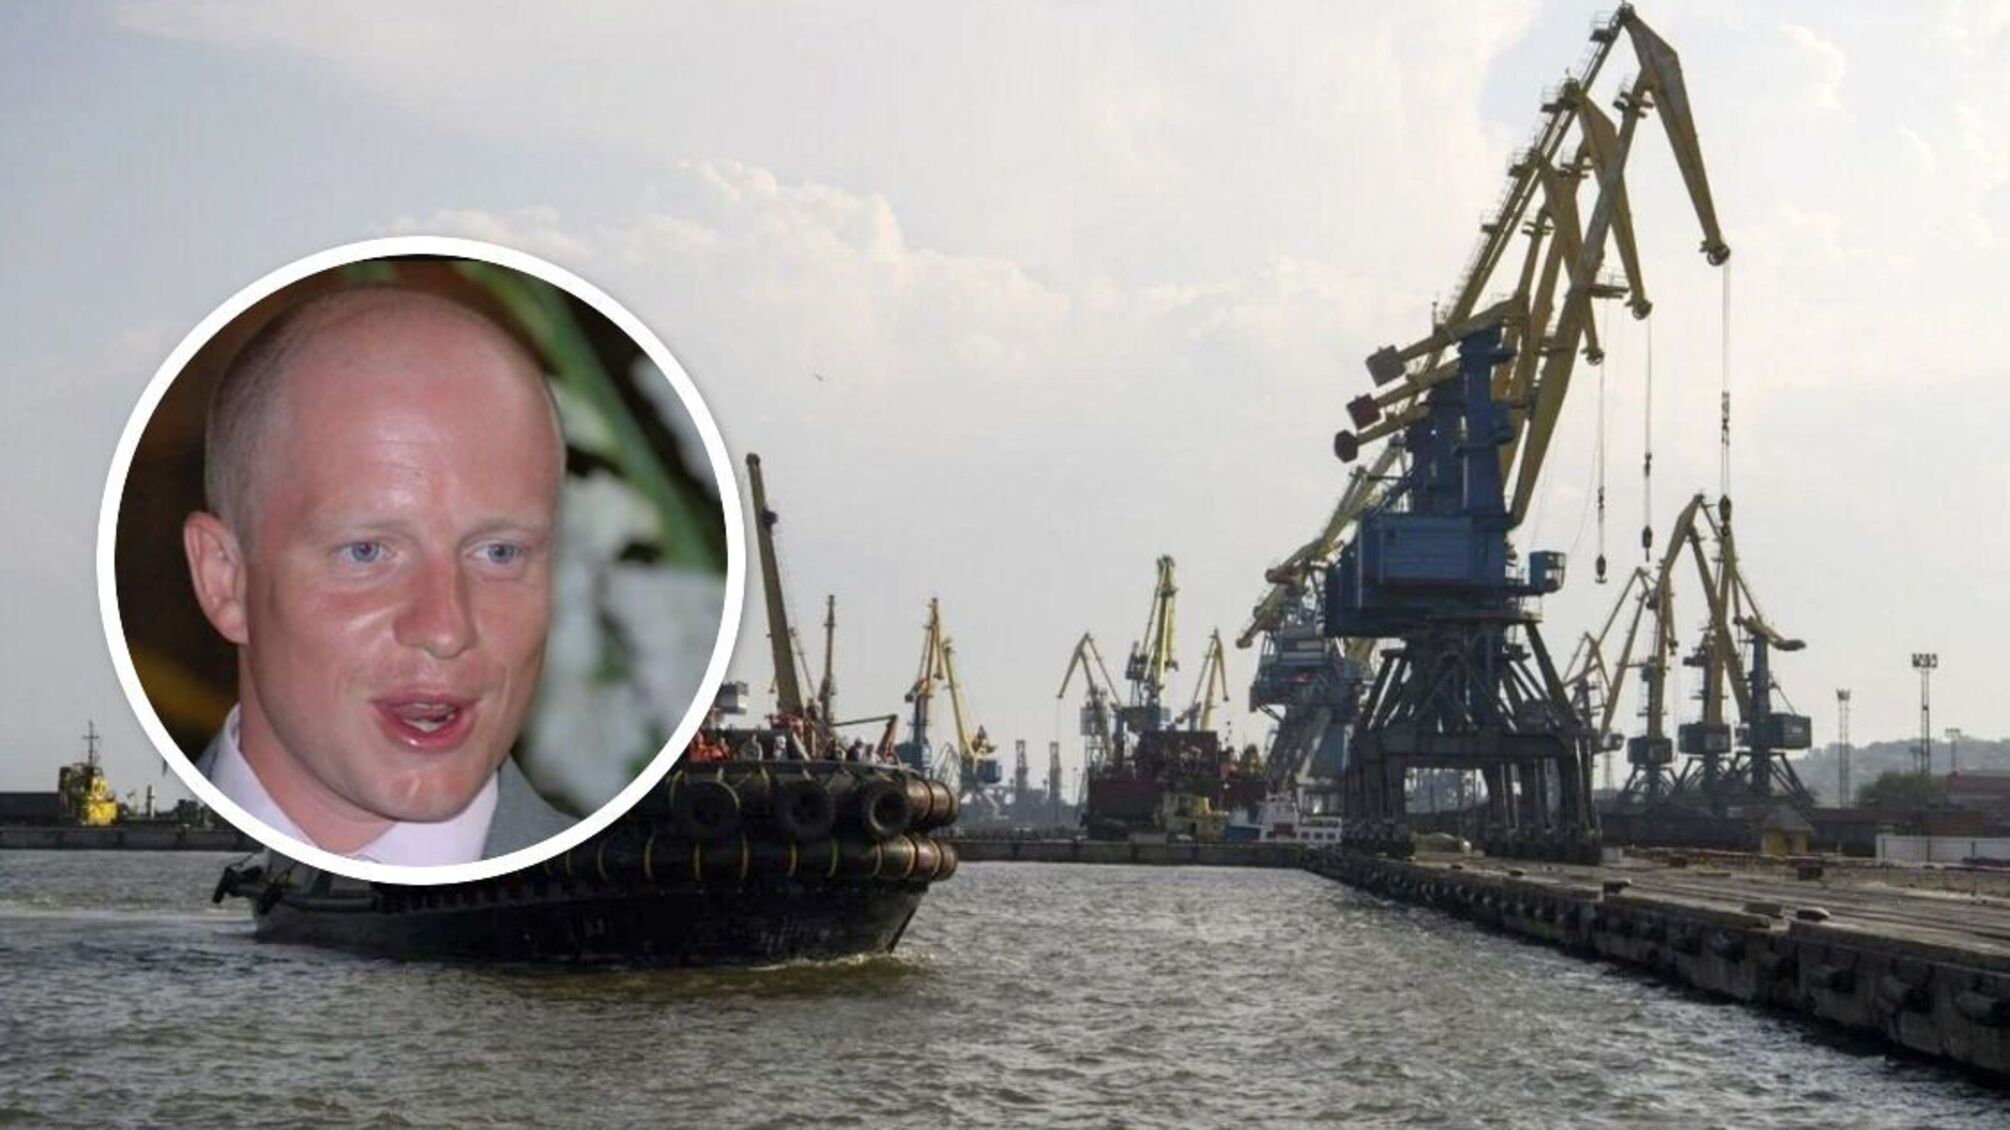 Порт 'Усть-Дунайск' продали по цене элеватора: причастен замминистра инфраструктуры Васьков - что известно